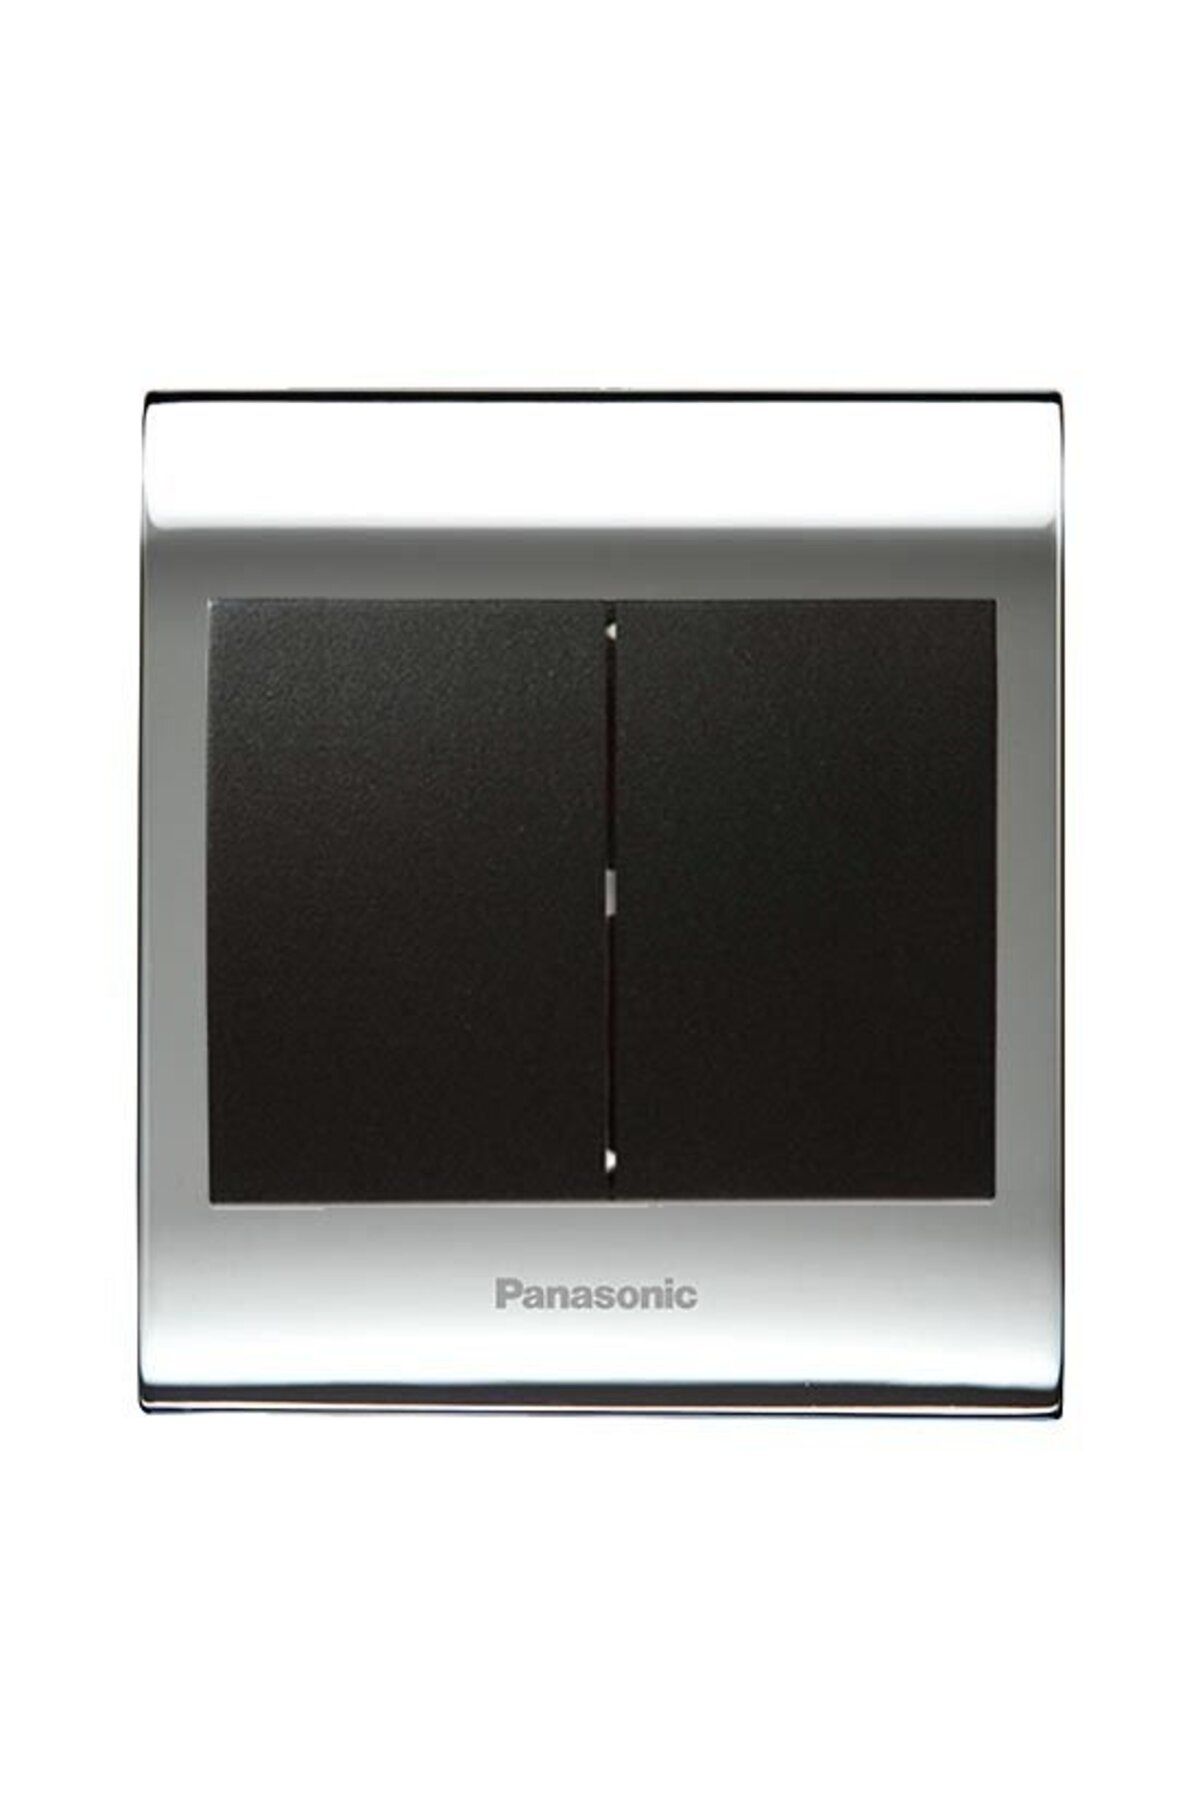 Panasonic Viko Panasonic Thea Blu İkili Anahtar, Çerçeve Chrome+Beyaz, Kapak Siyah